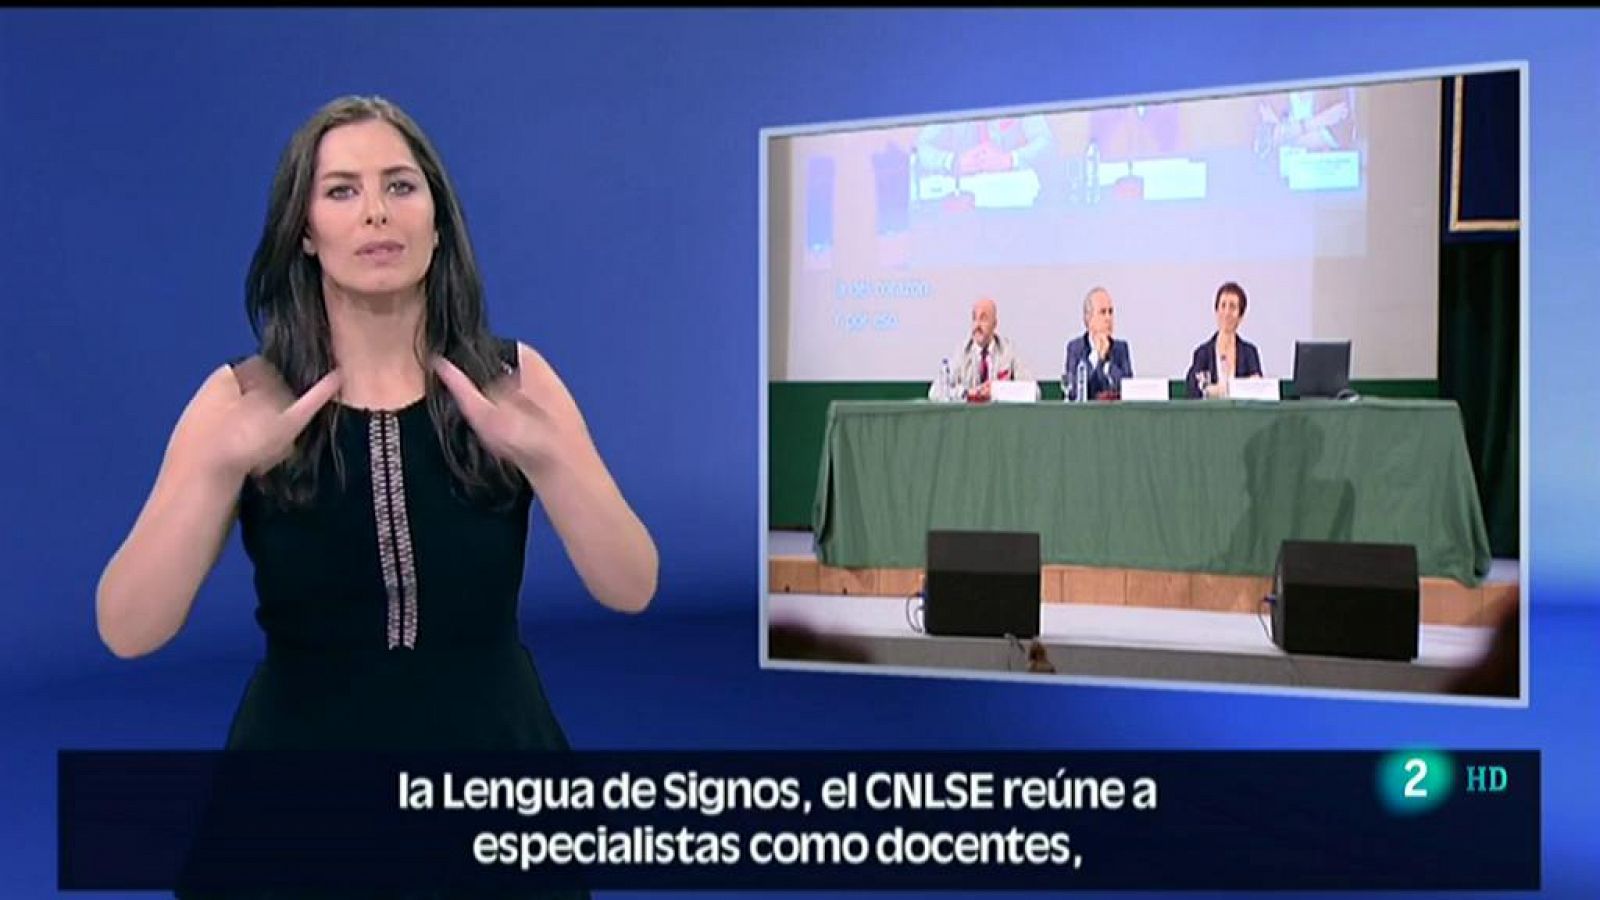 Lengua de signos: en Madrid se ha celebrado el Congreso del CNLSE